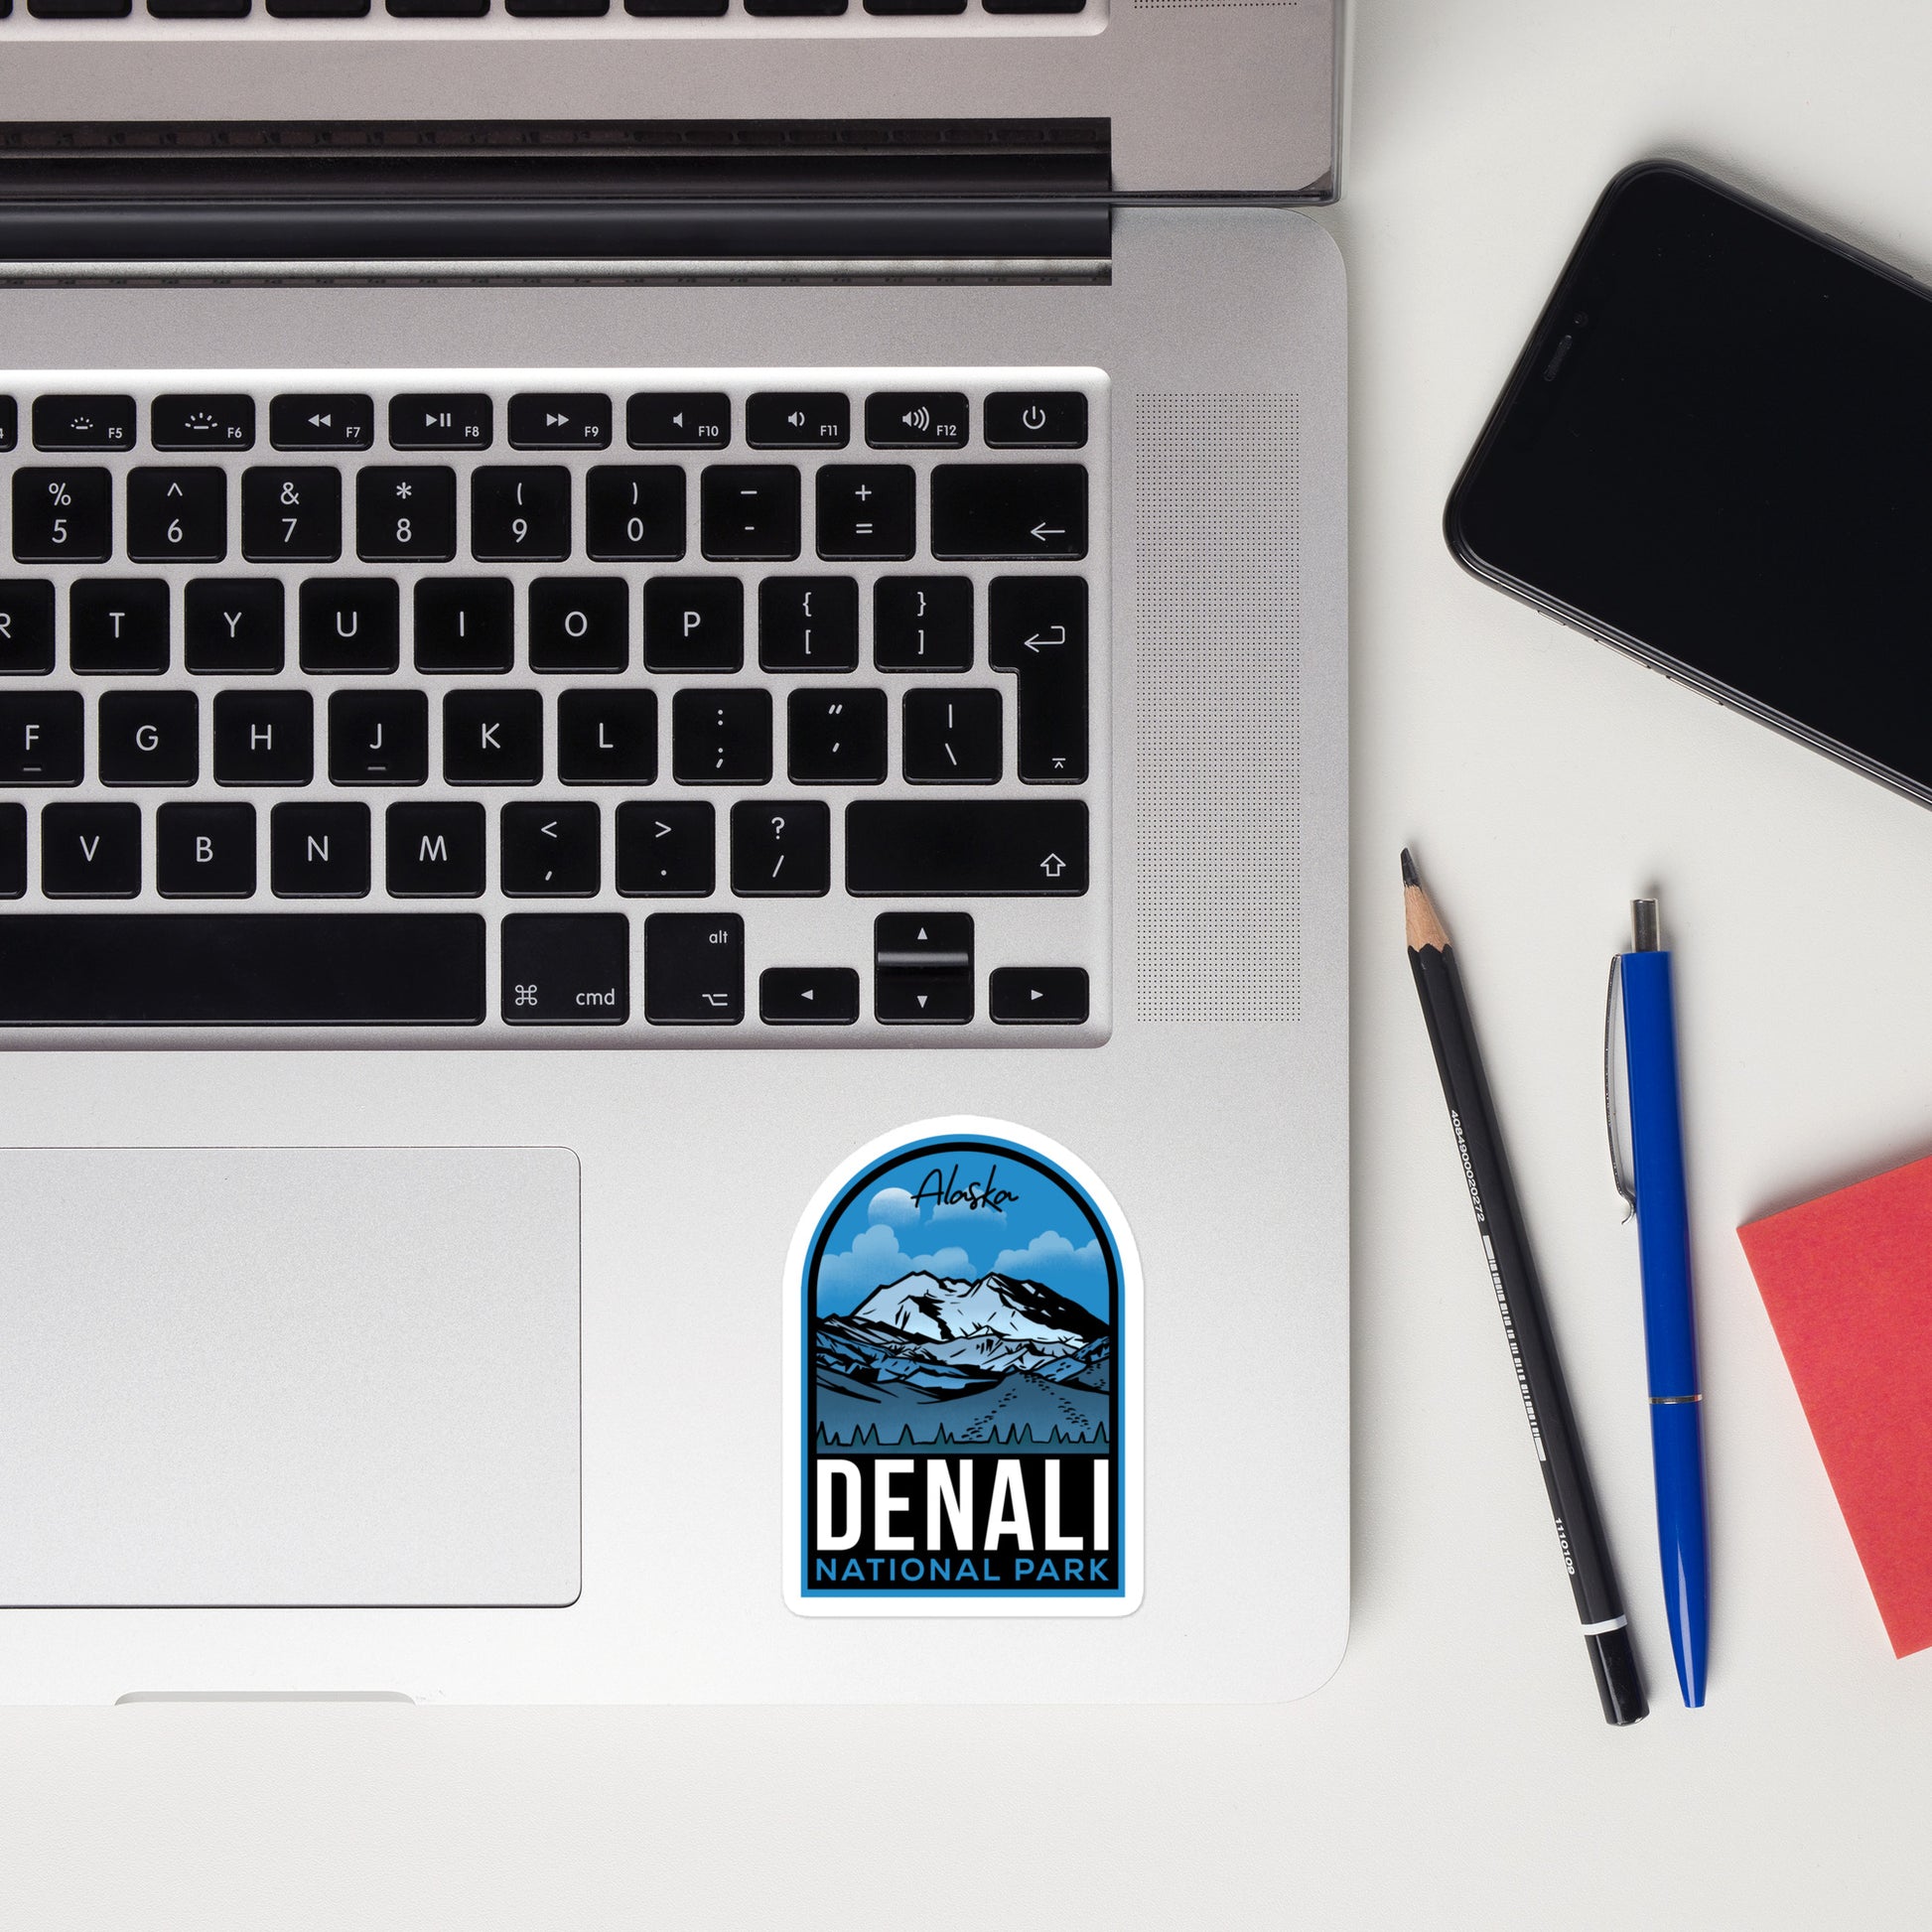 A sticker of Denali National Park on a laptop